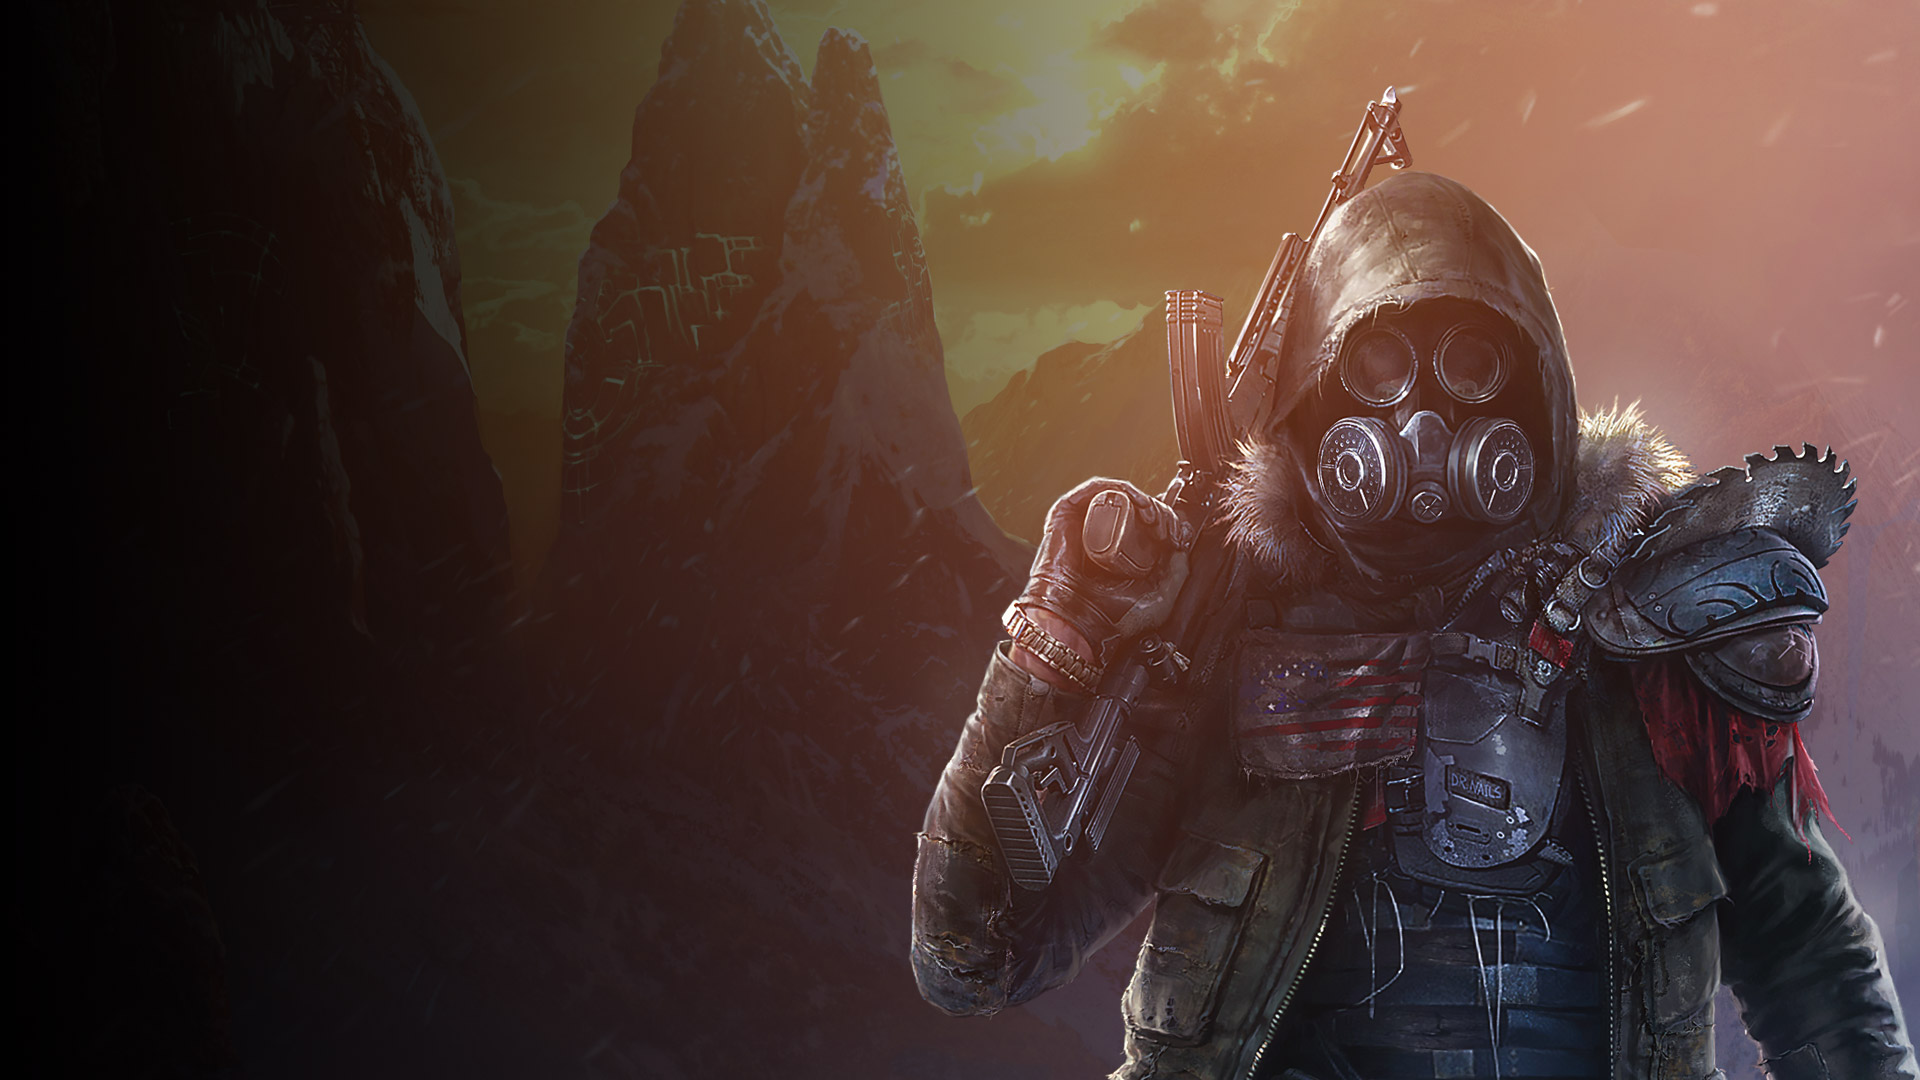 Χαρακτήρας του Wasteland 3 που φορά πανοπλία και μάσκα προσώπου ενώ κρατά ένα όπλο